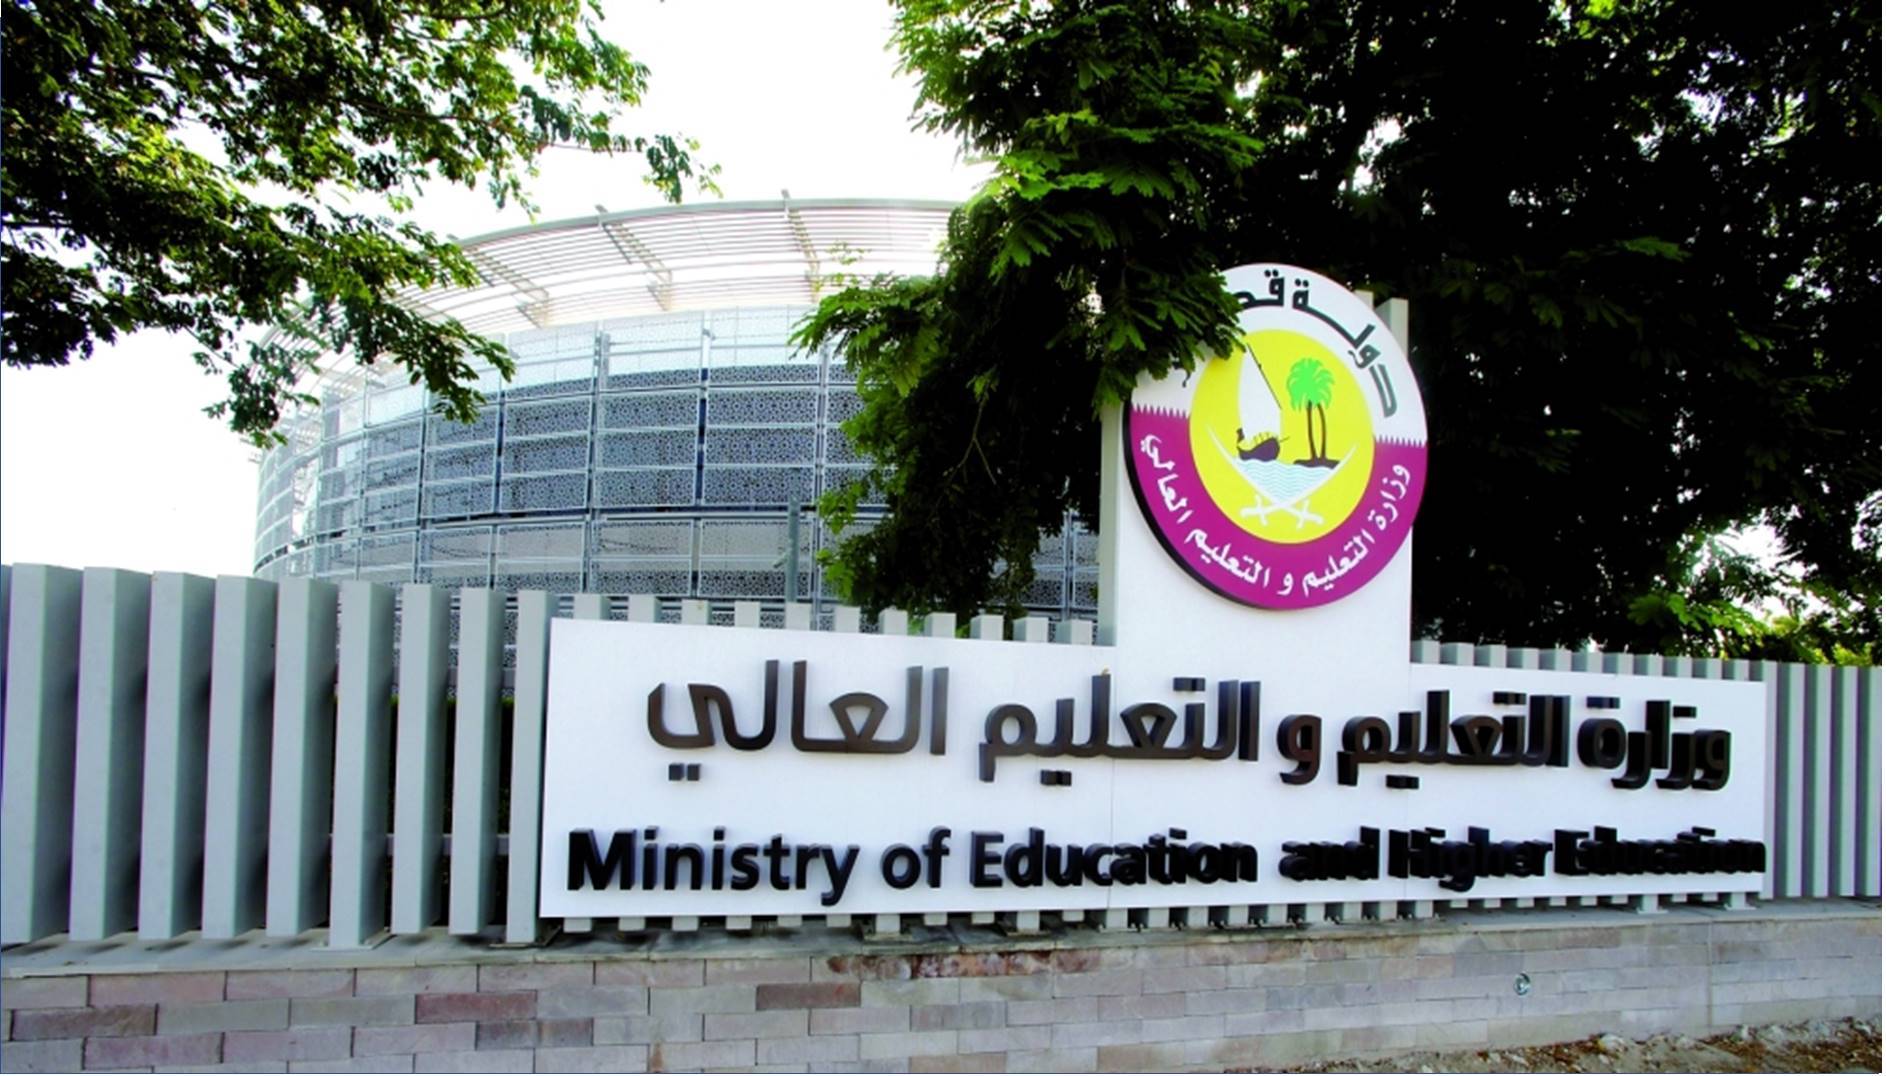 وزارة التربية والتعليم القطرية تعلن عن وظائف معلمين – فلسطين